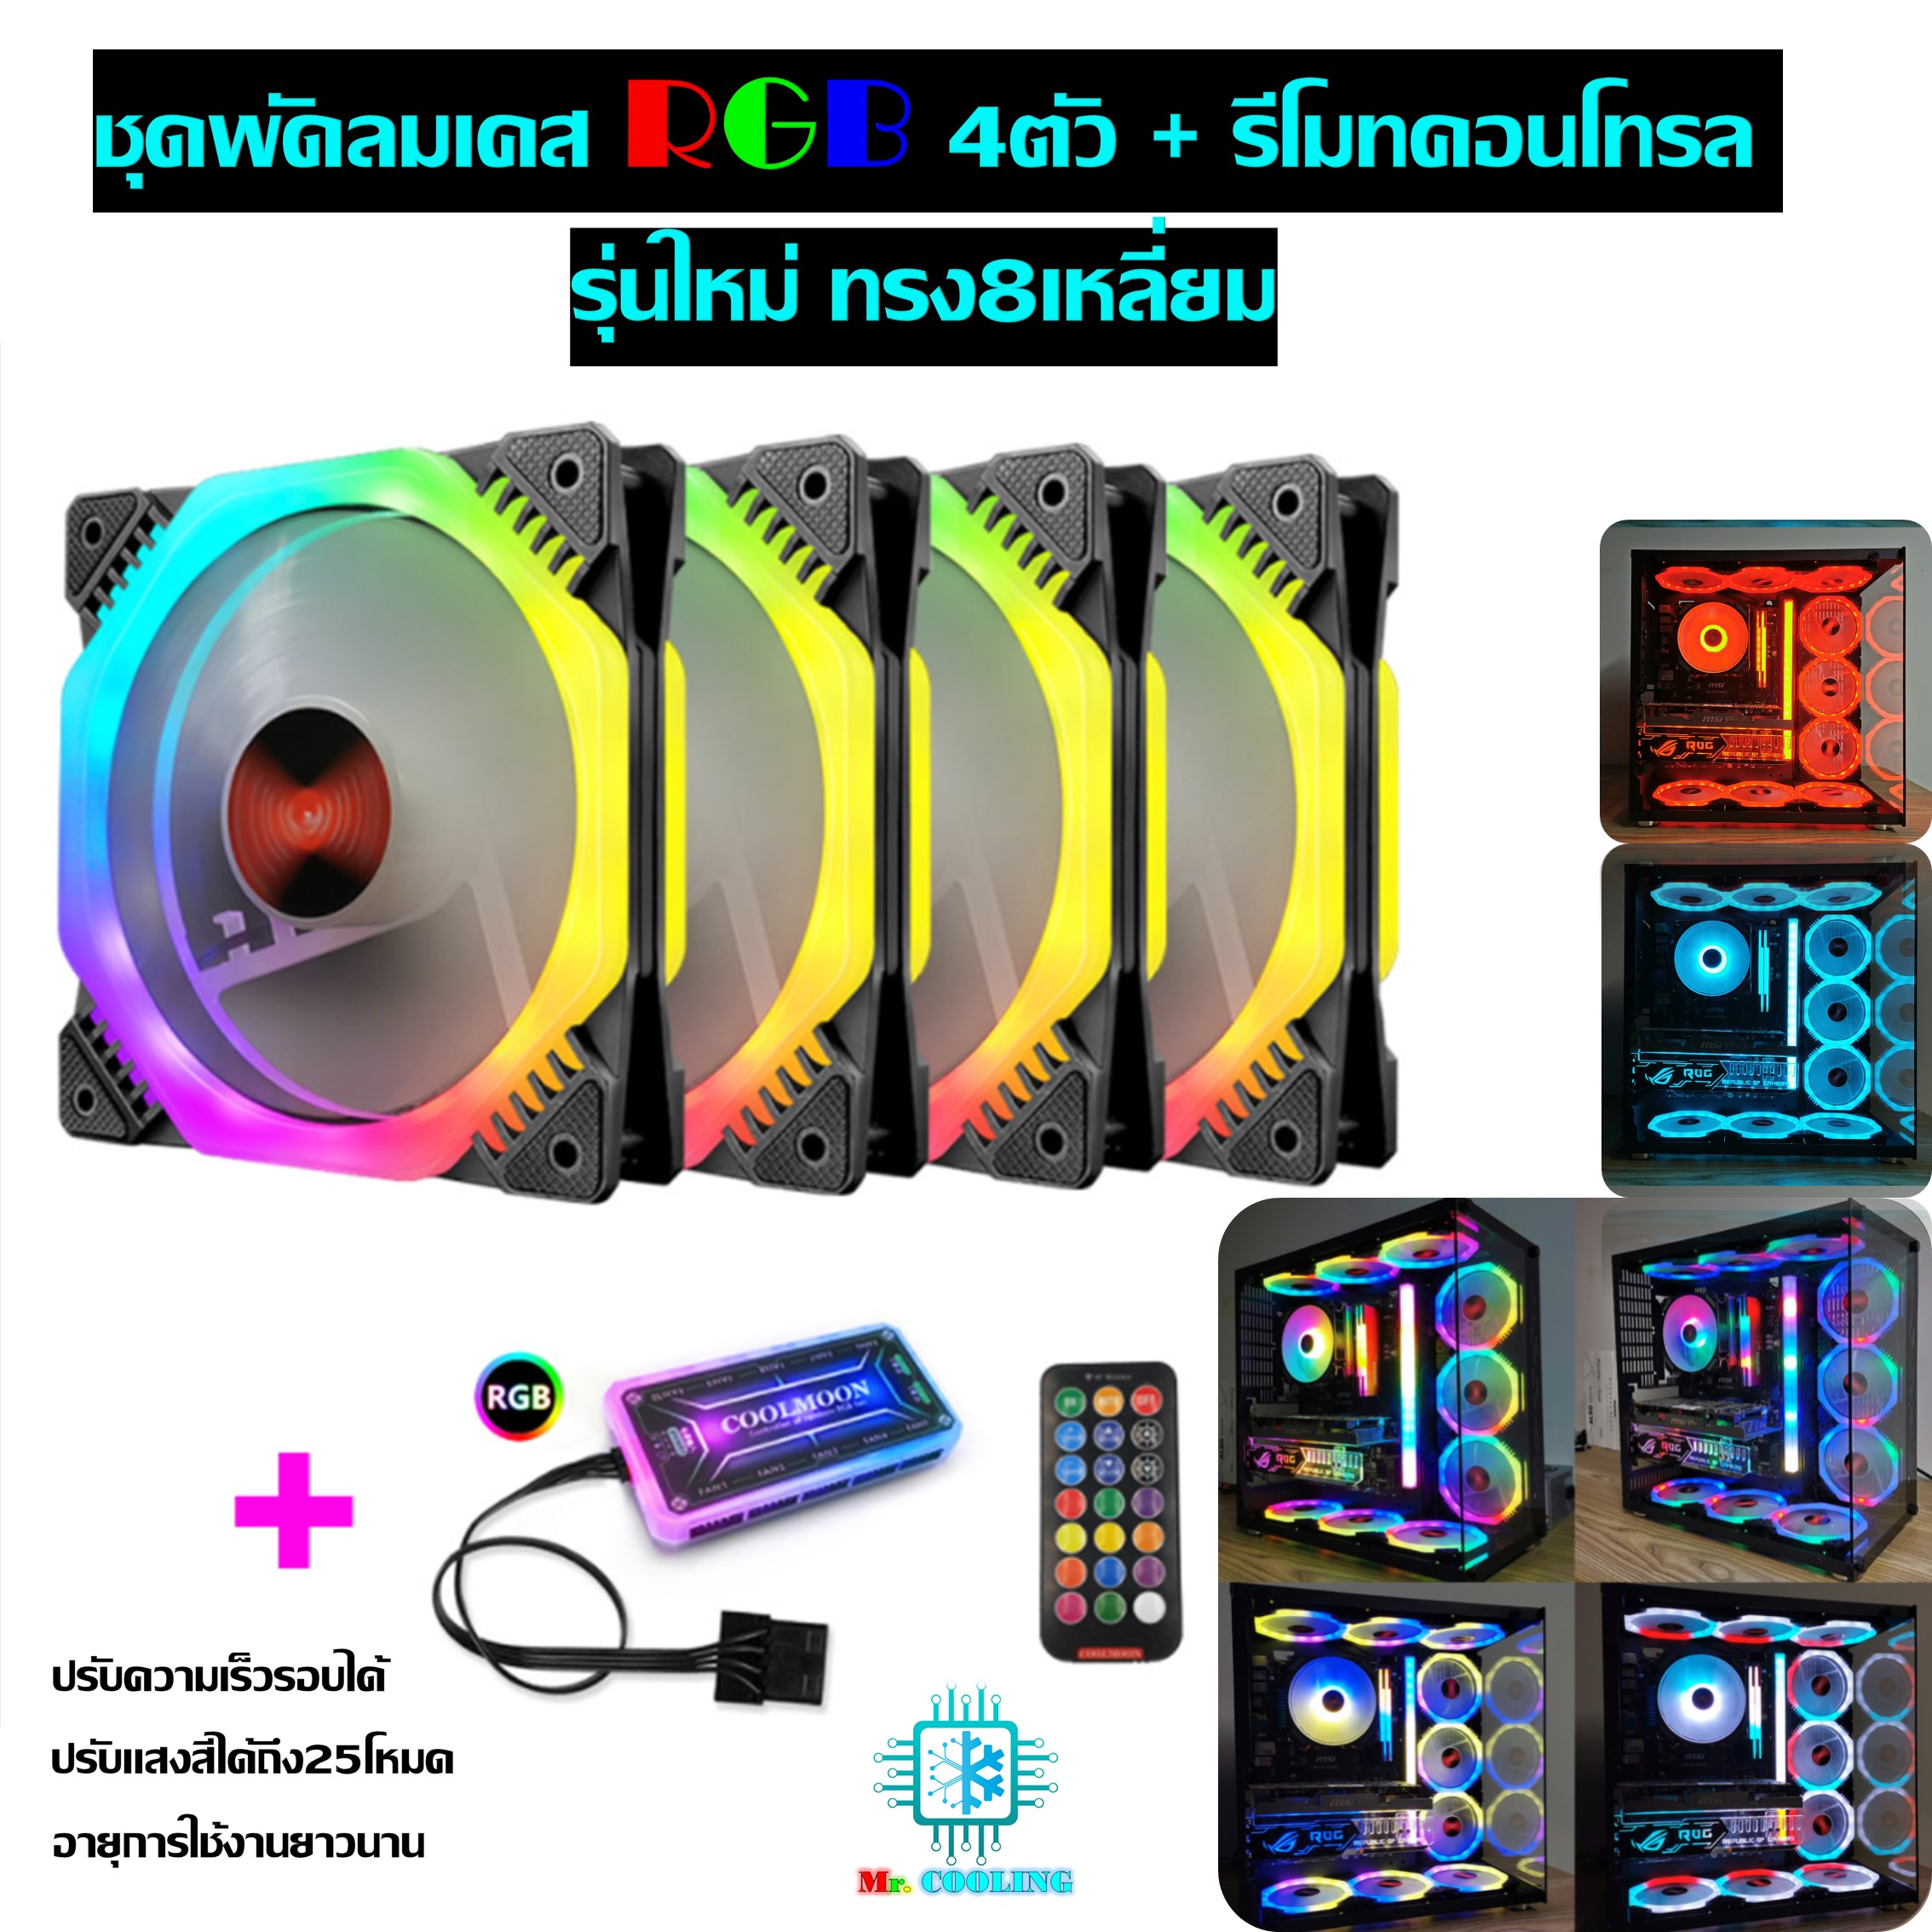 พัดลมเคสRGB 4ตัว +รีโมท ทรงแปดเหลี่ยม ระบายความร้อนคอมพิวเตอร์, RGB Fan case x4 with remote control,  Computer